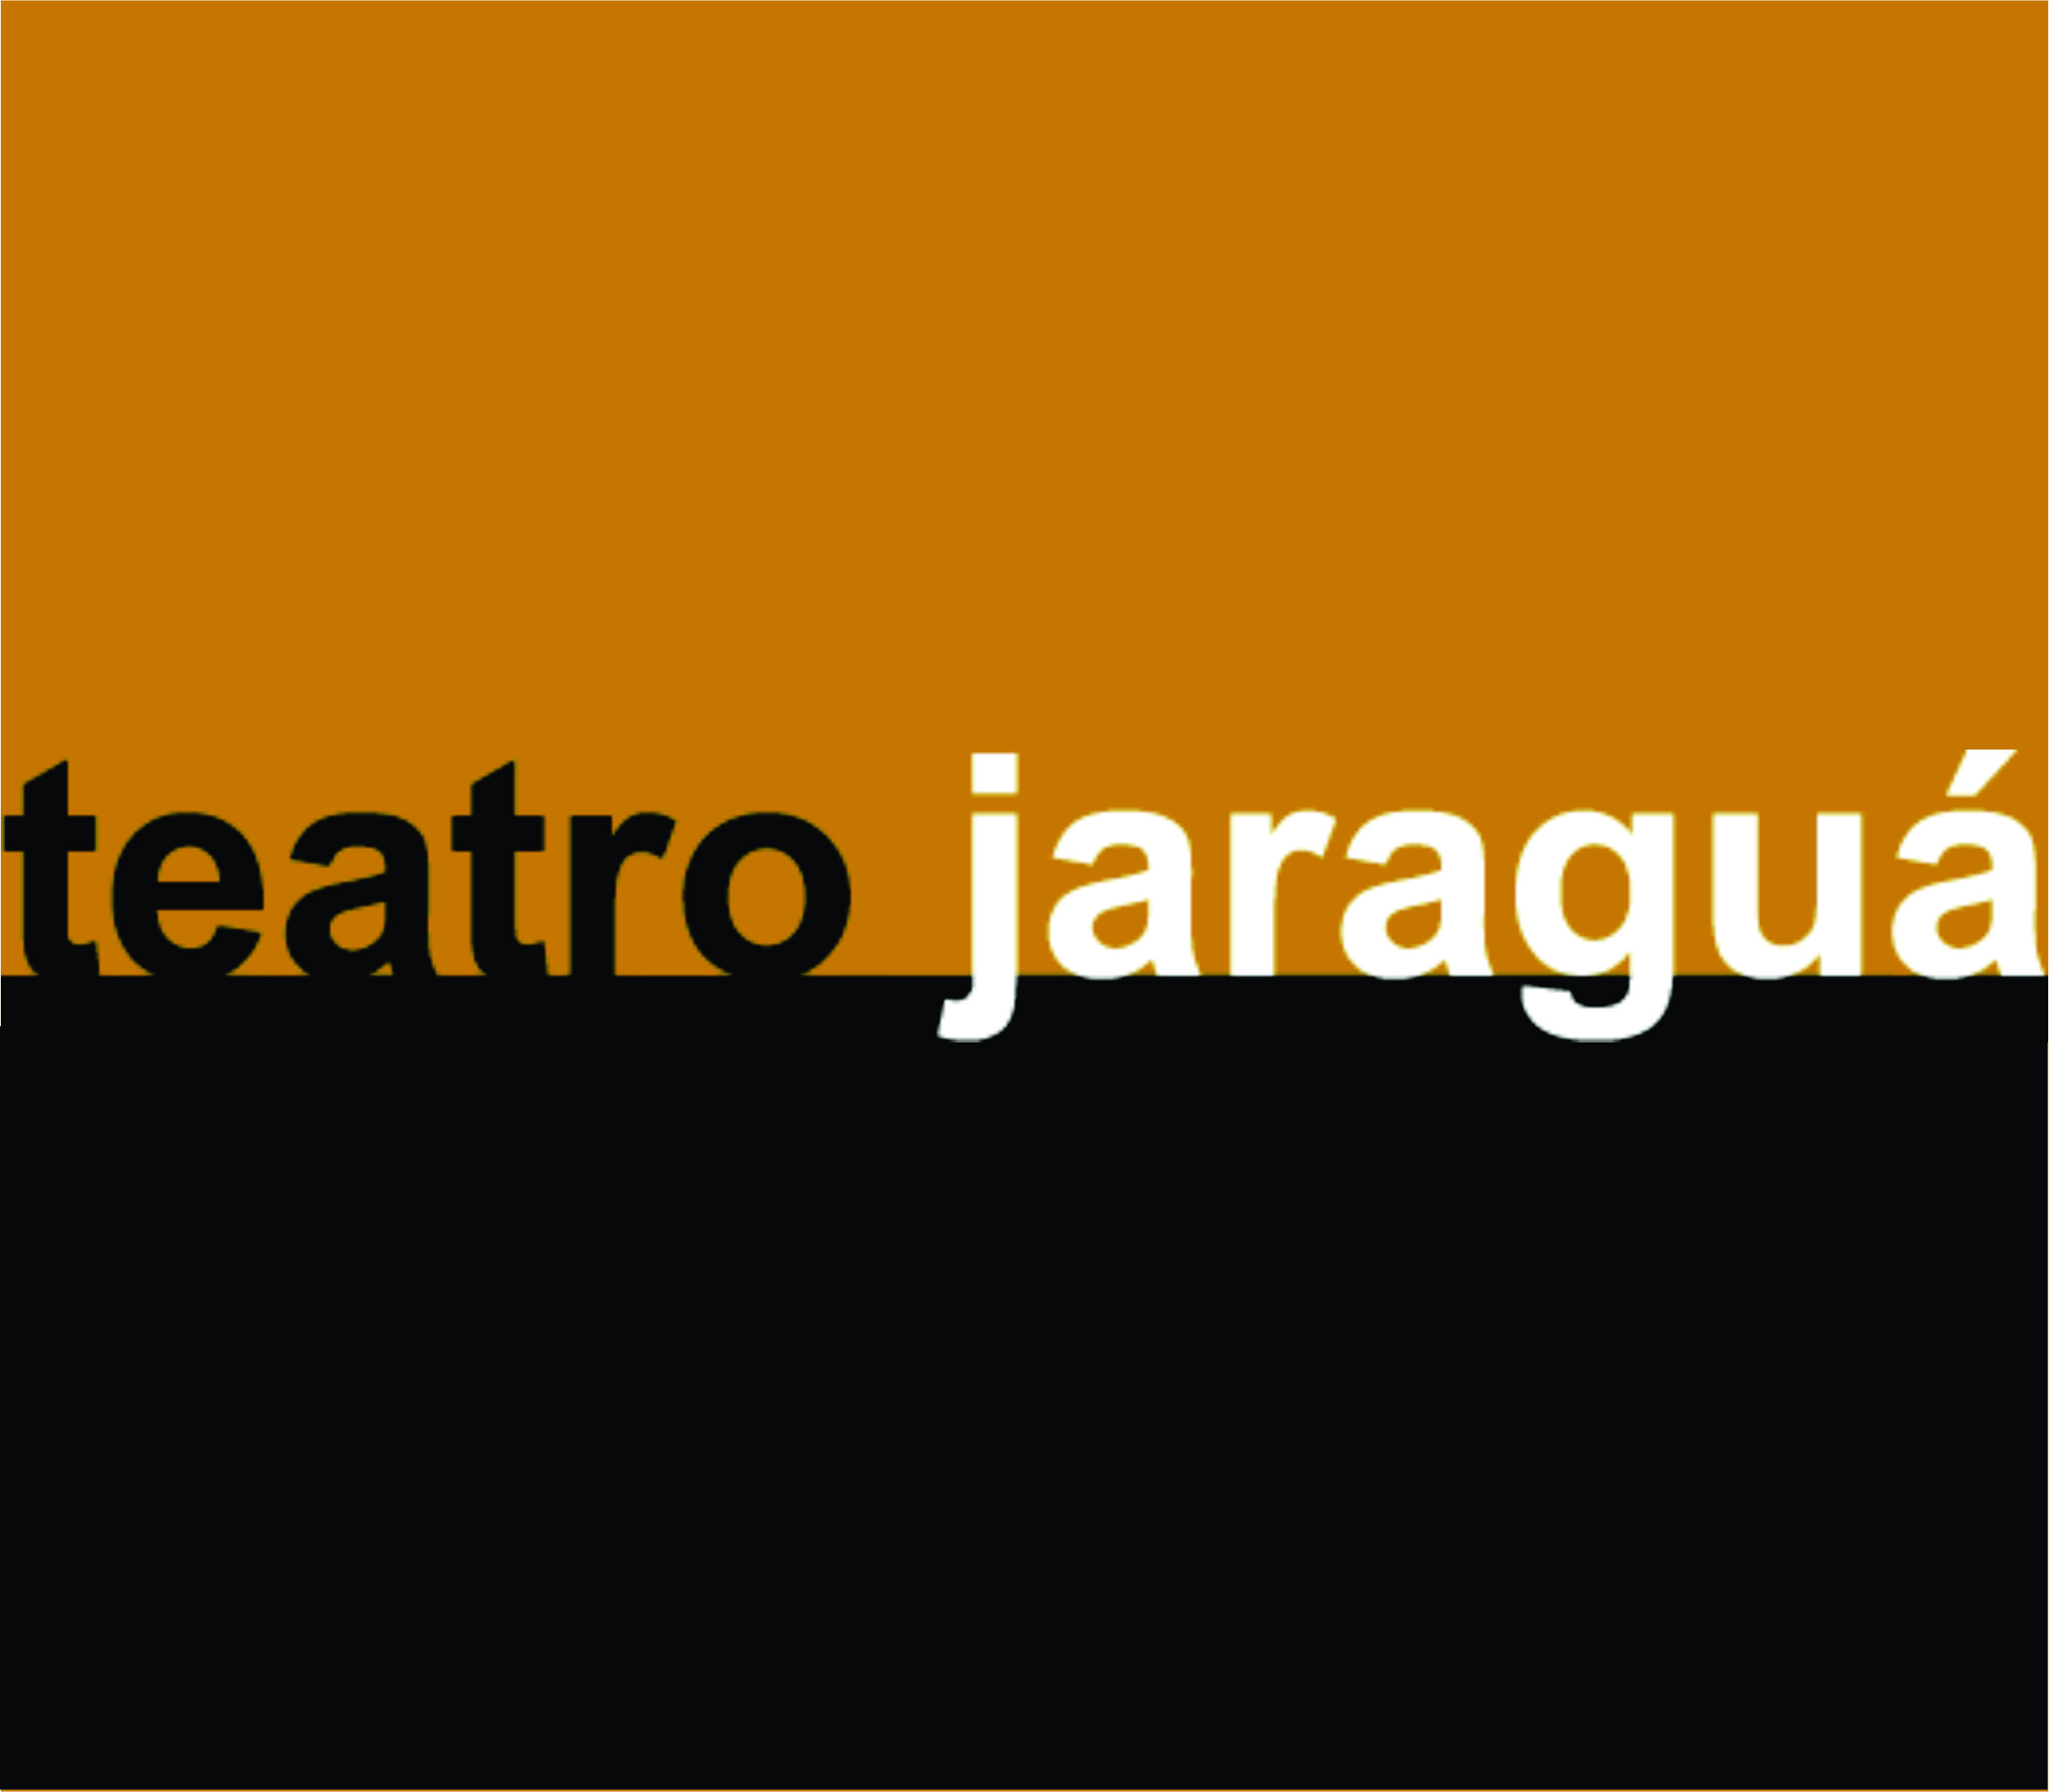 Teatro Jaraguá